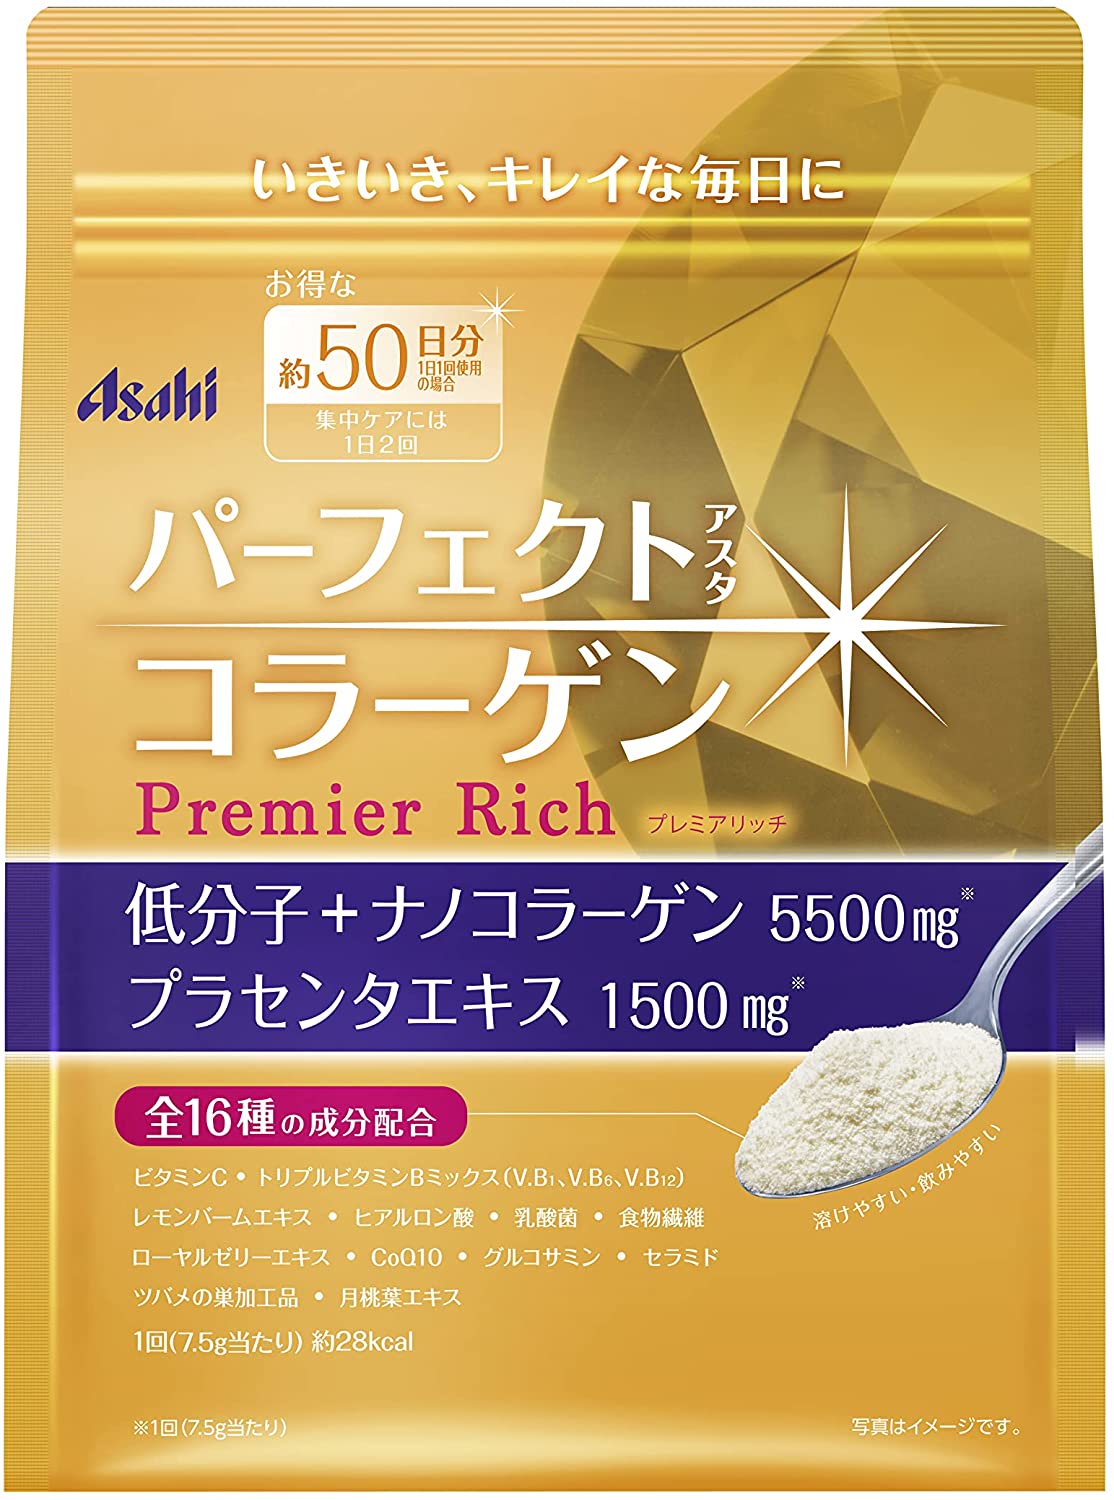 Asahi Premier Rich - Низкомолекулярный премиум коллаген с добавками для омоложения кожи, комплекс на 50 дней